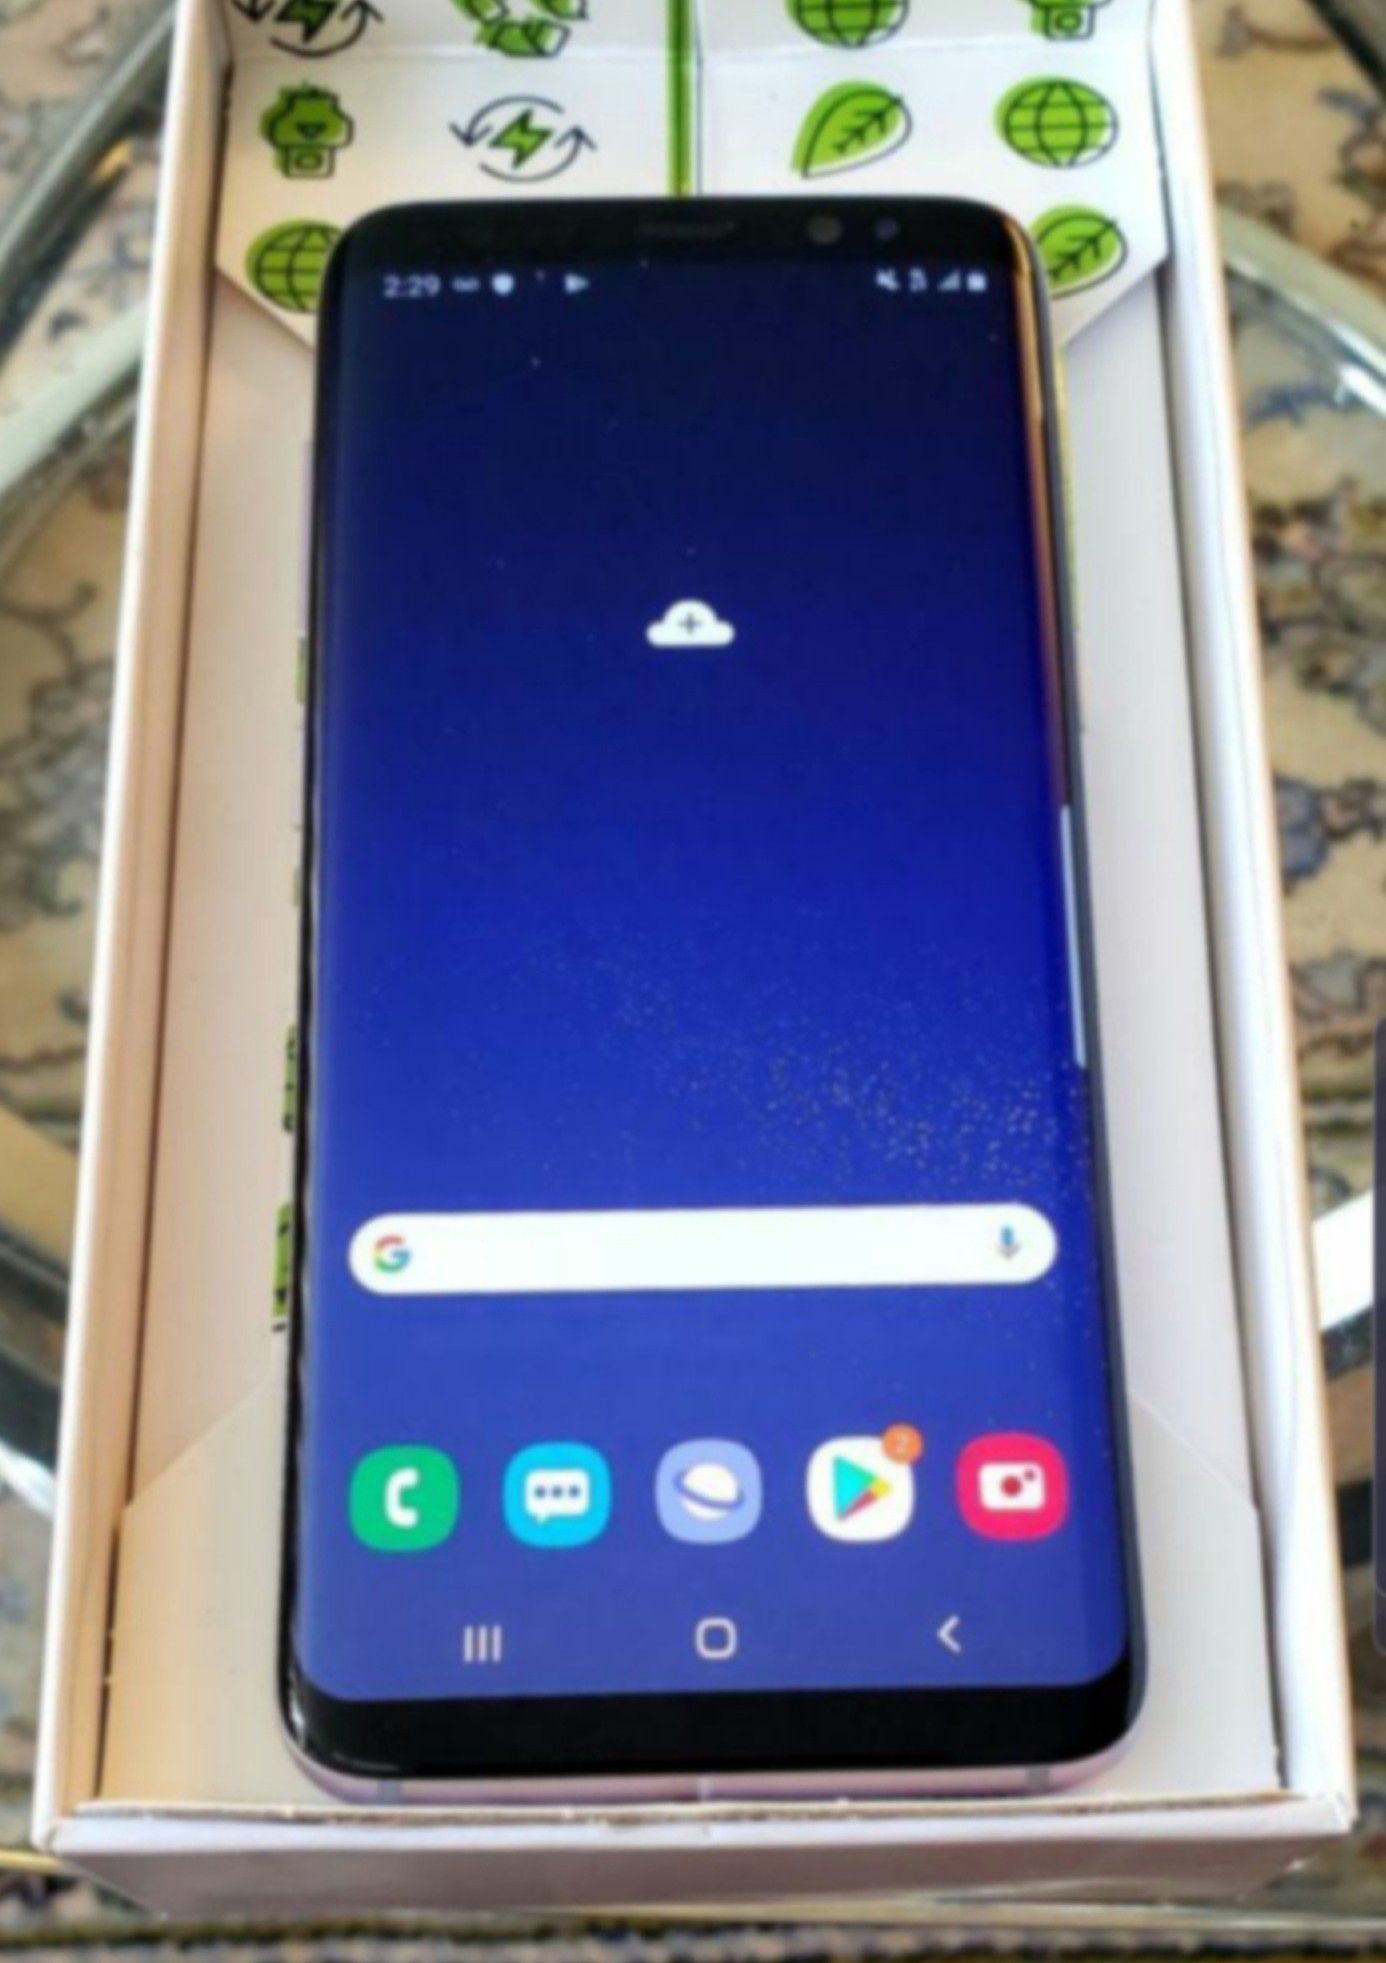 New Galaxy S8 Samsung Unlocked Liberado DESBLOQUEADO T-Mobile Metro Att Cricket